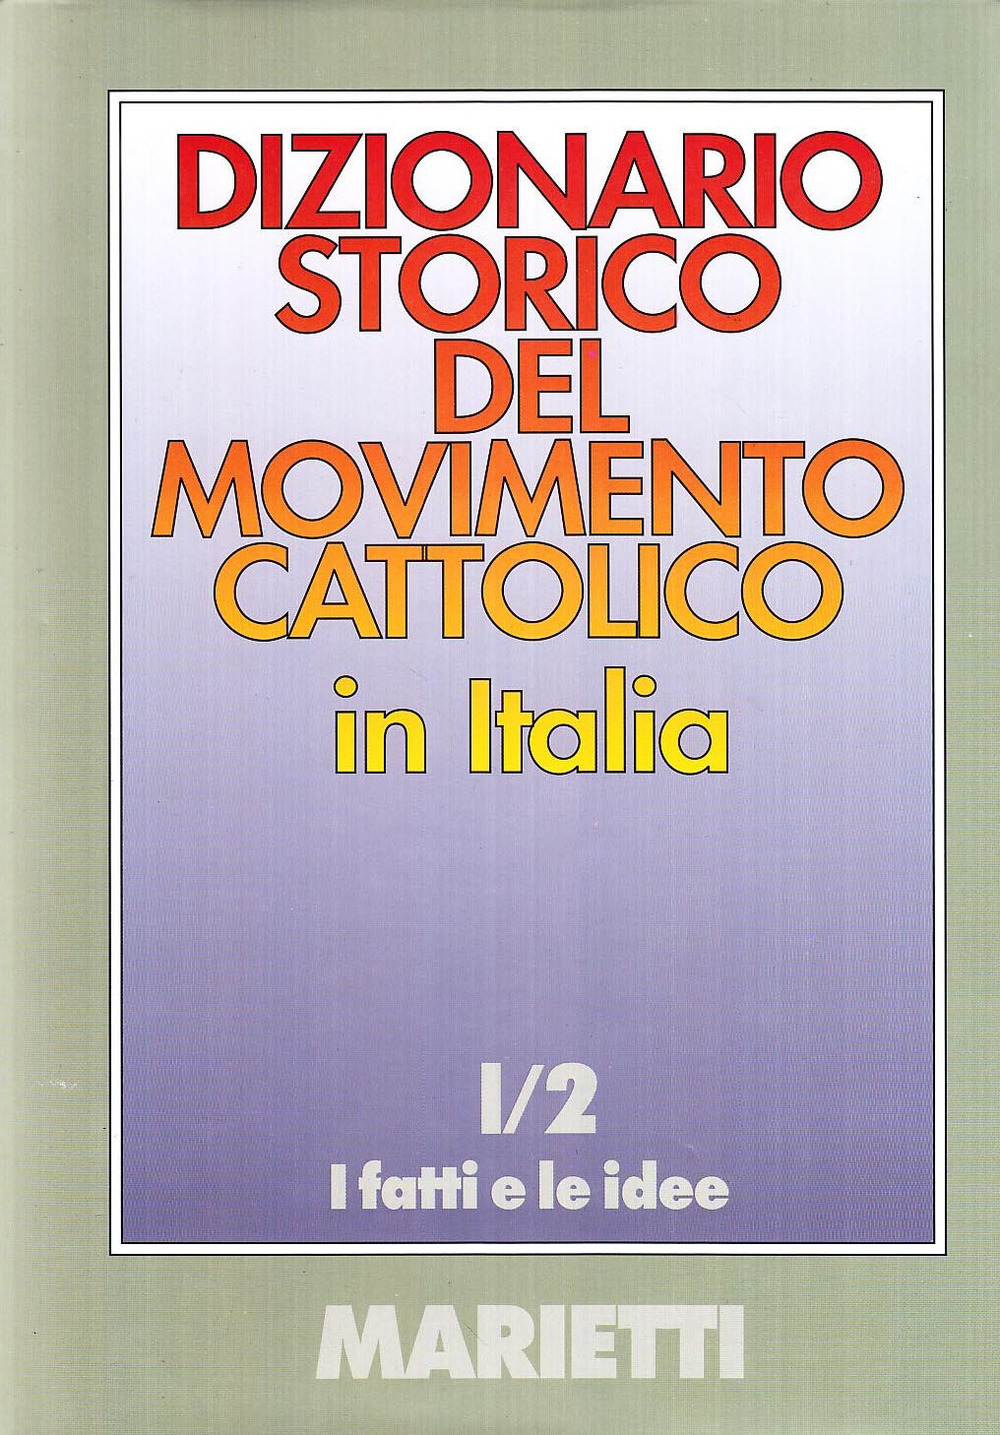 Dizionario storico del movimento cattolico in Italia. Vol. 1/2: I fatti e le idee